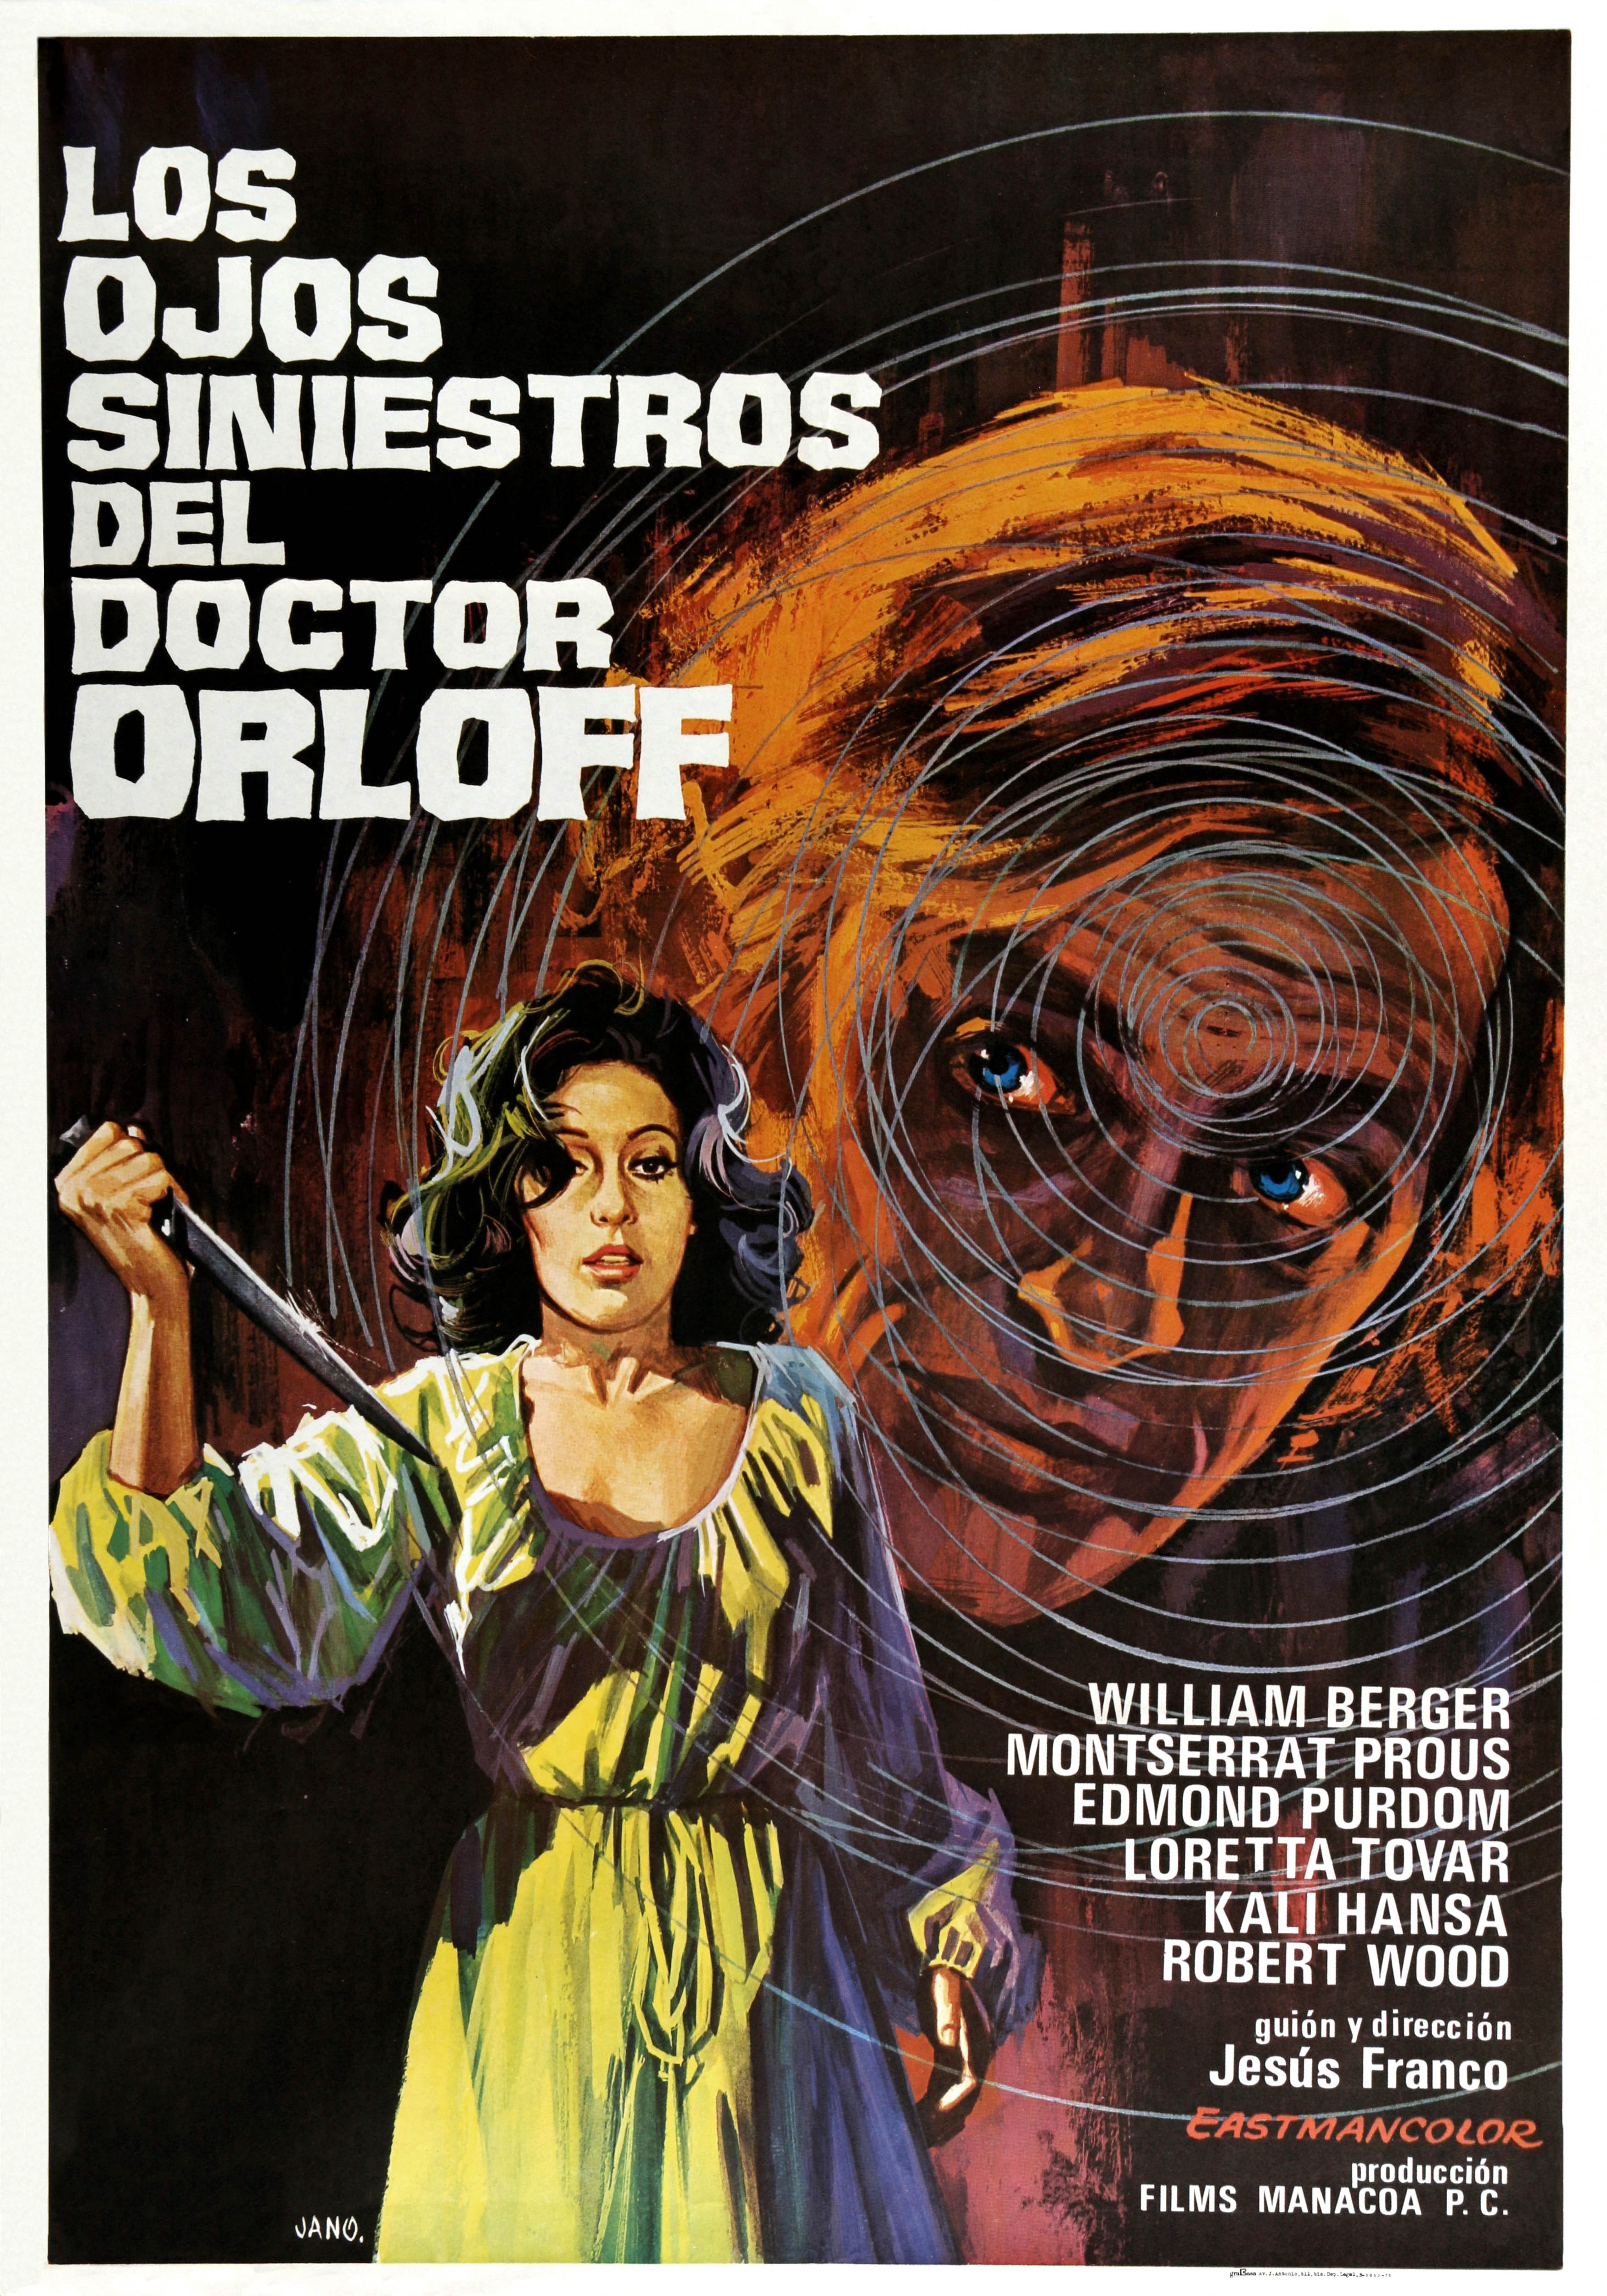 Los ojos siniestros del doctor Orloff, 1973